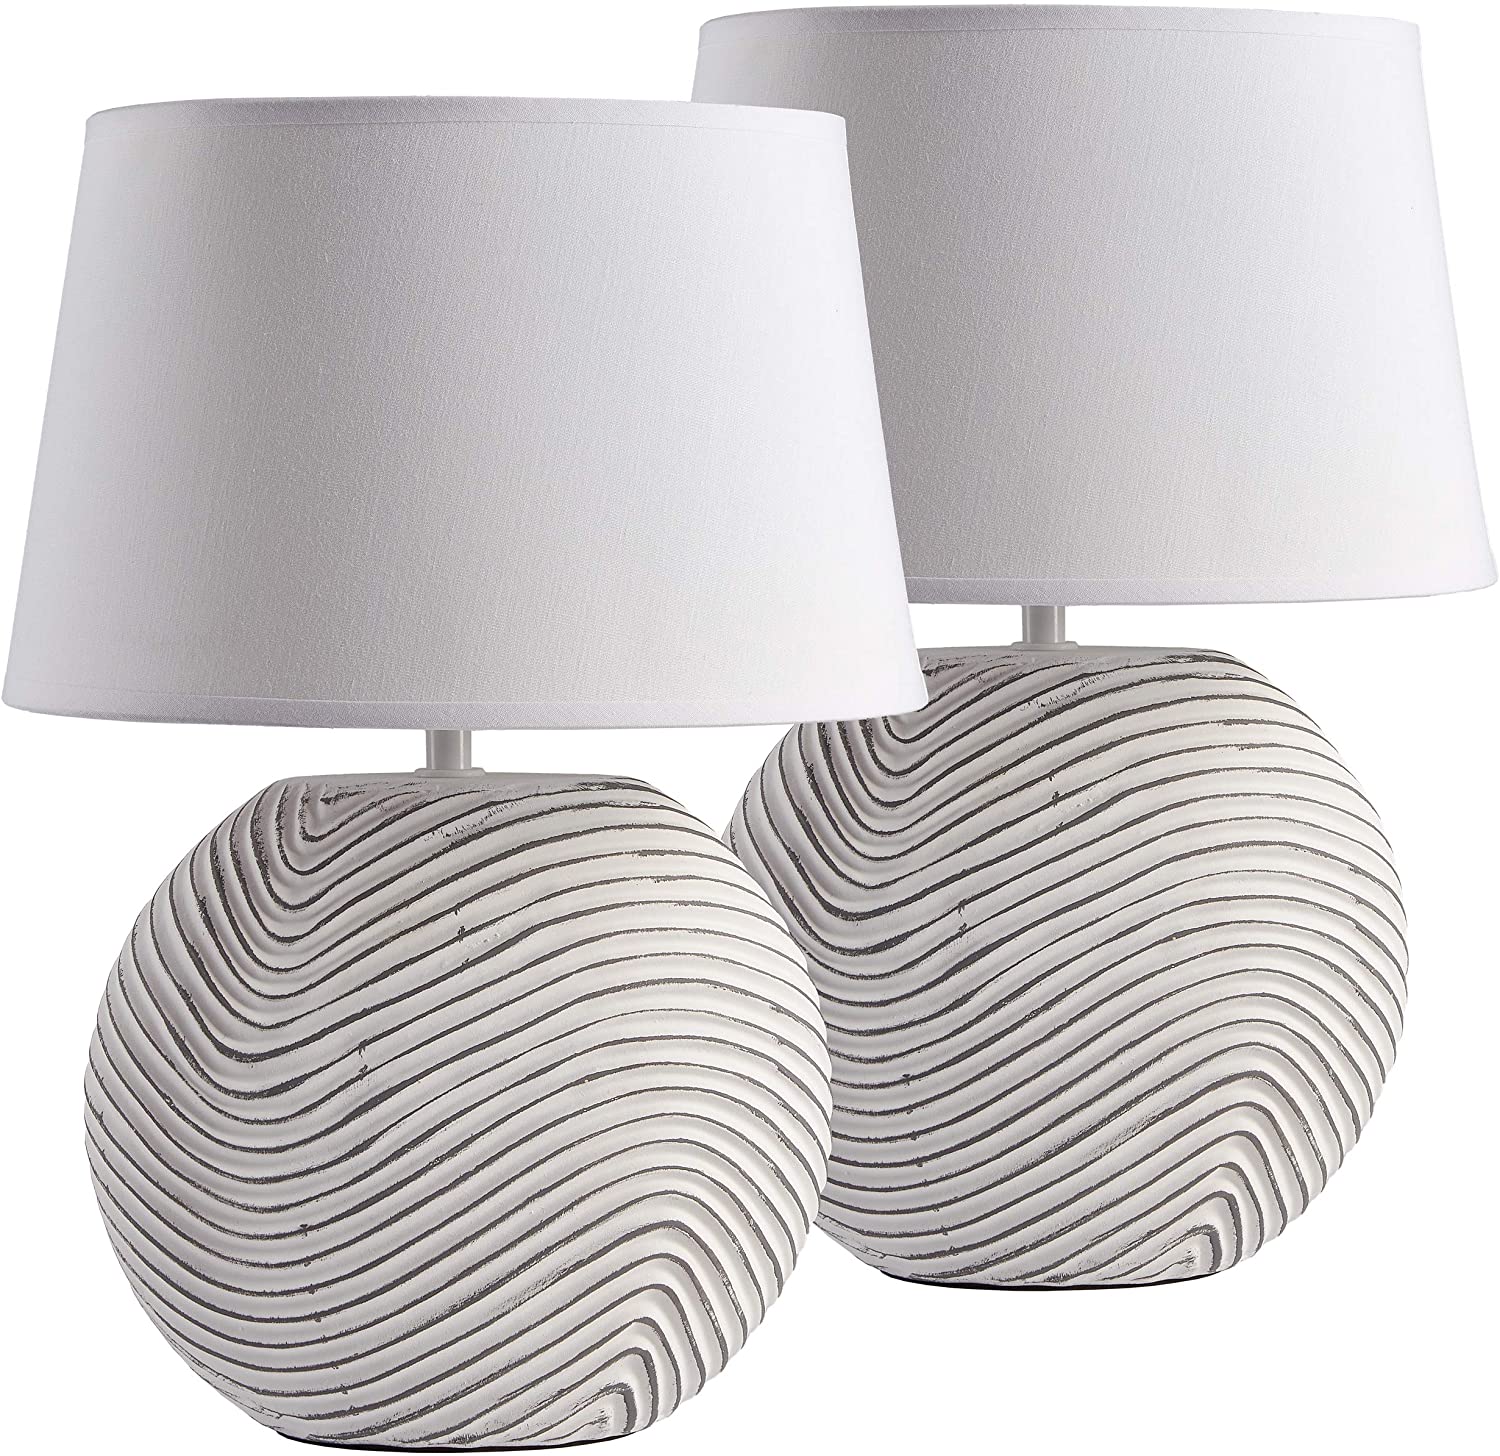 2x Moderne Nachttischlampe Keramikfuß creme braun weiß Schlafzimmerbeleuchtung 